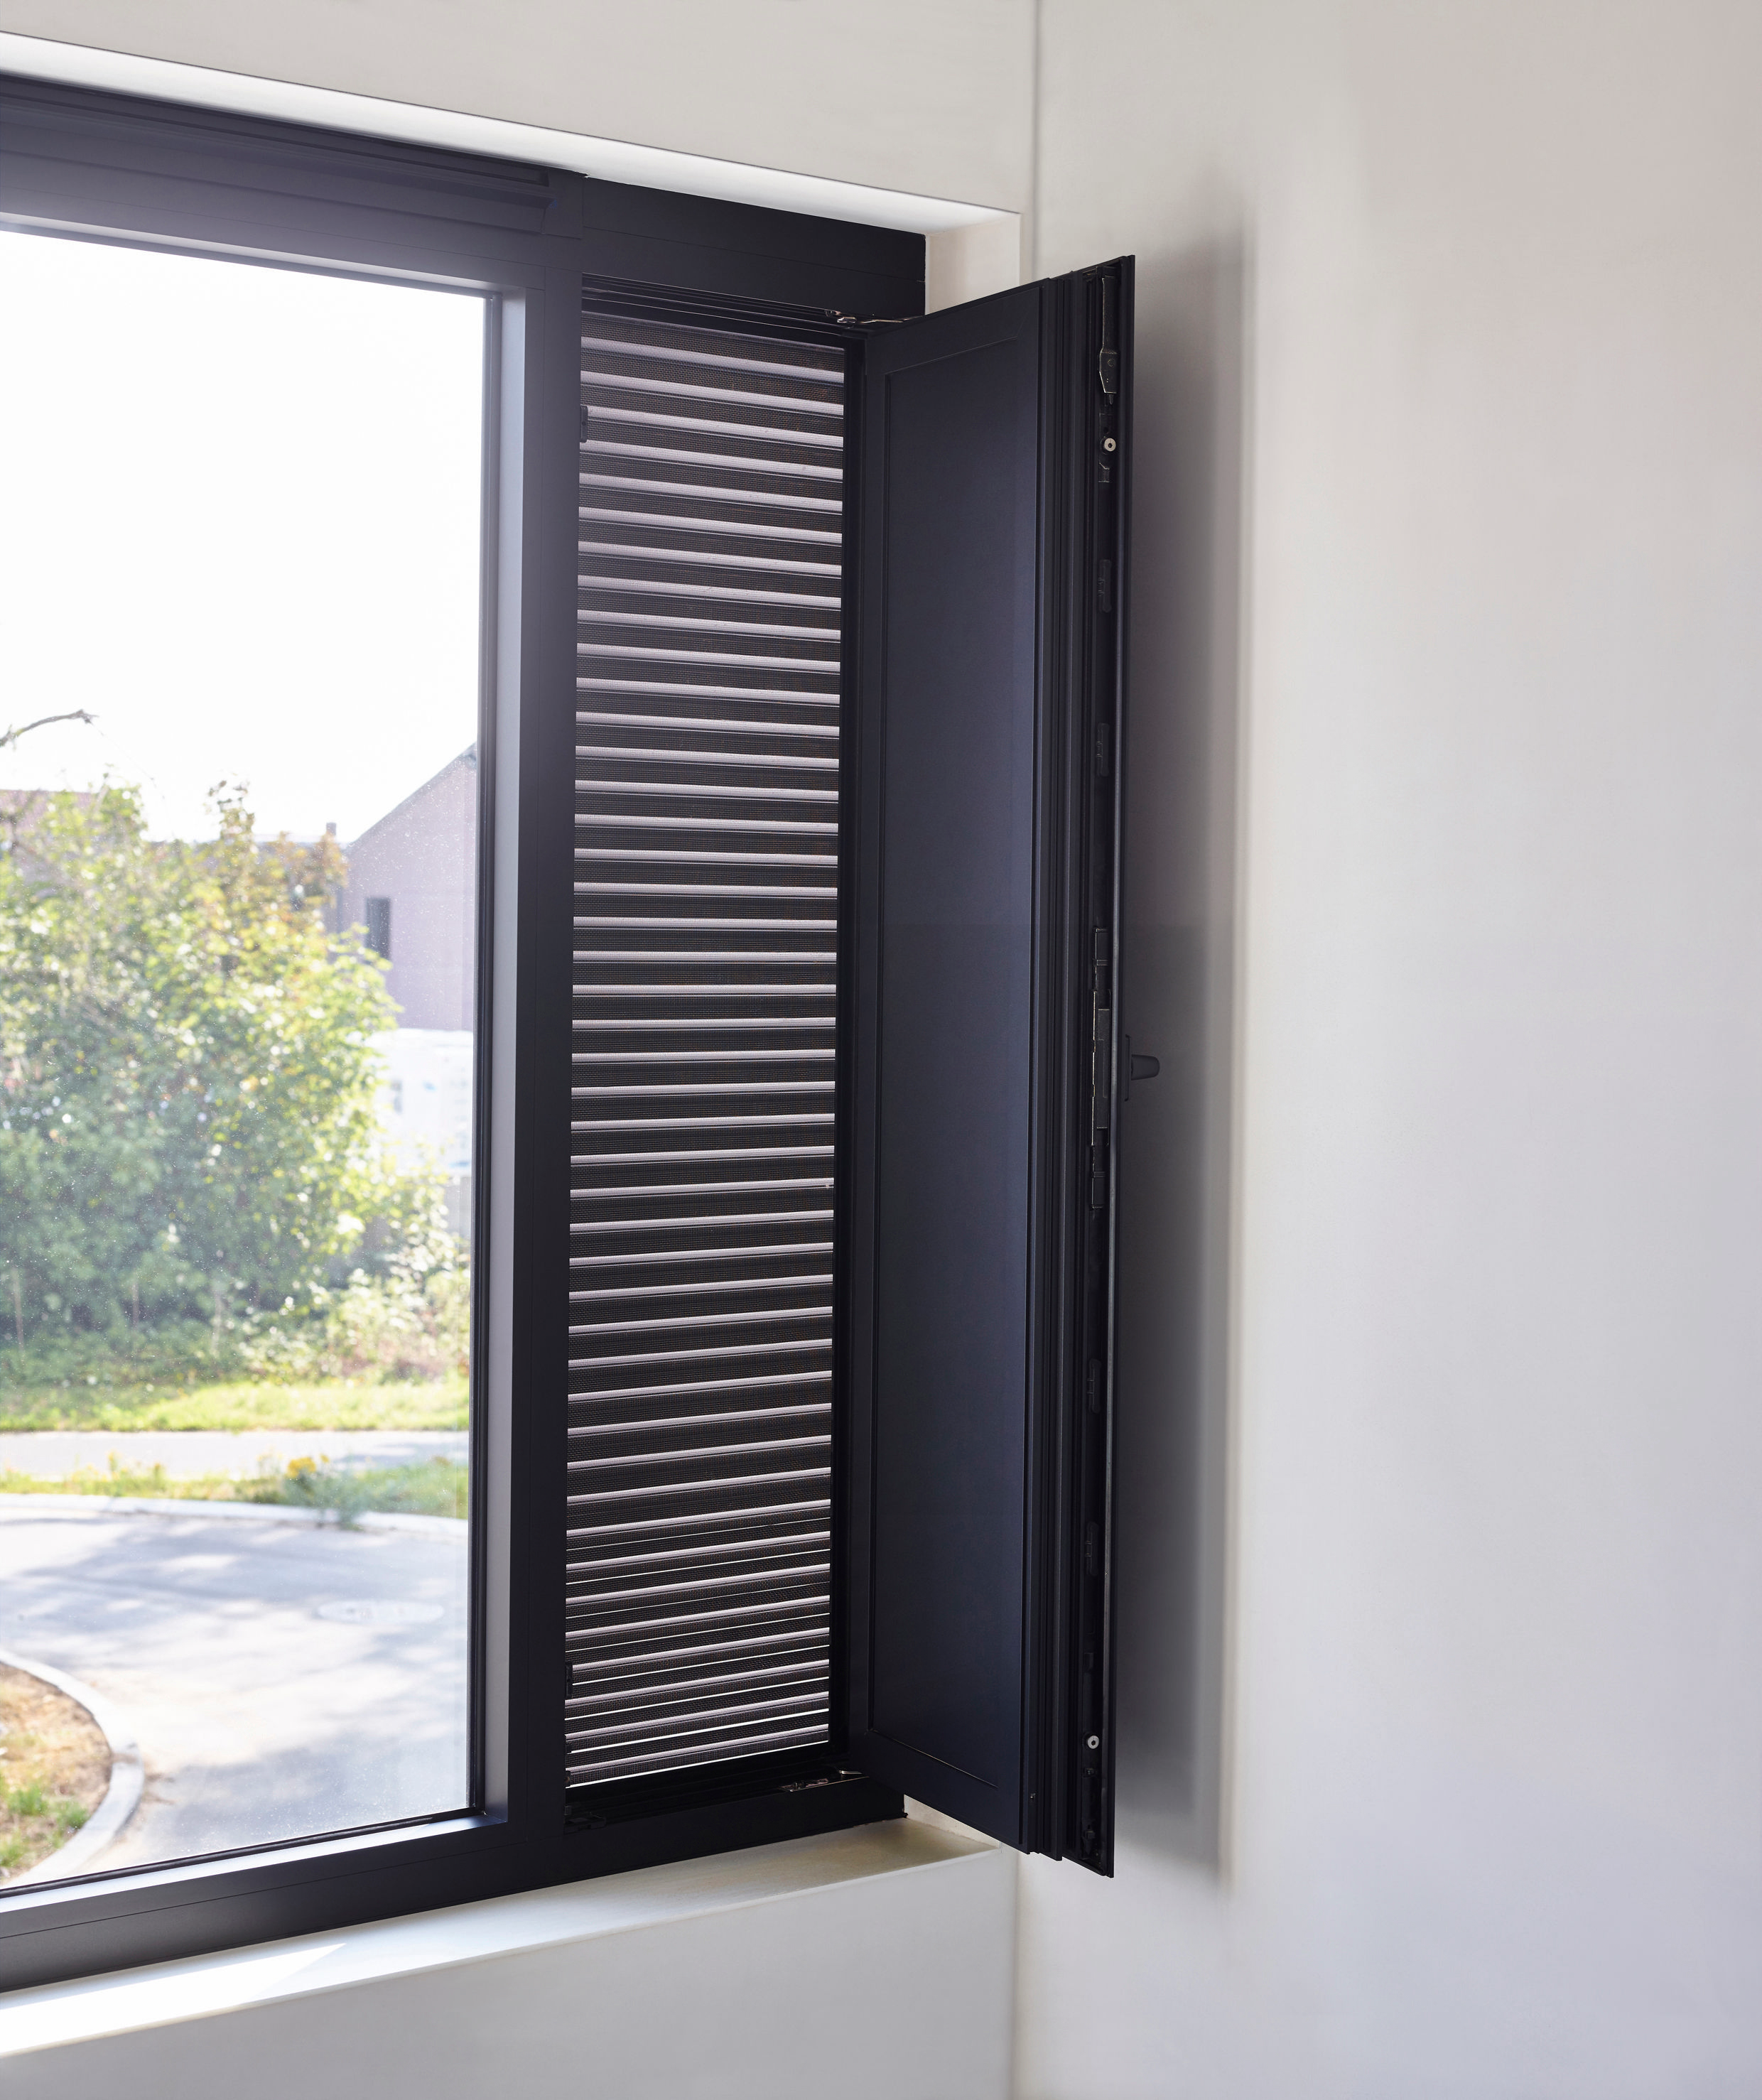 renson-zonwering-fixscreen-solar-huis-koel-zomer-afkoelen-screens-rooster-ventilatie